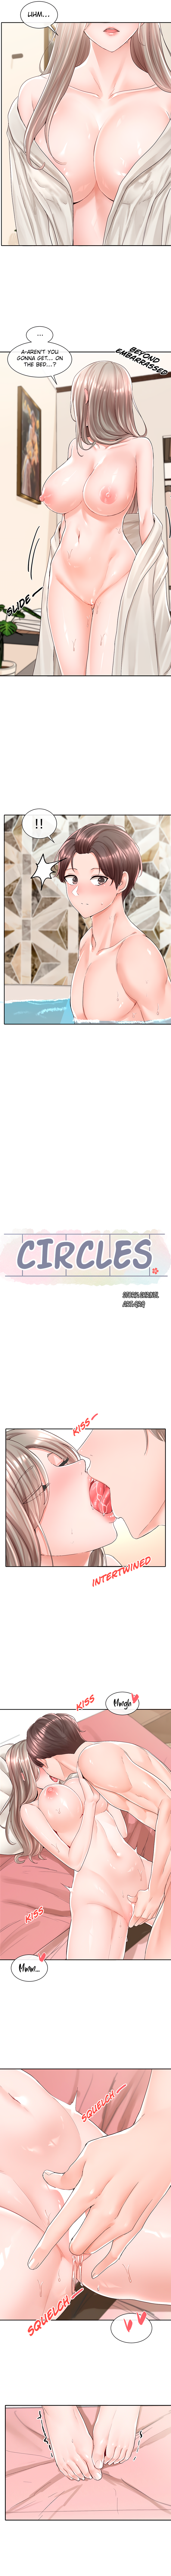 Circles image